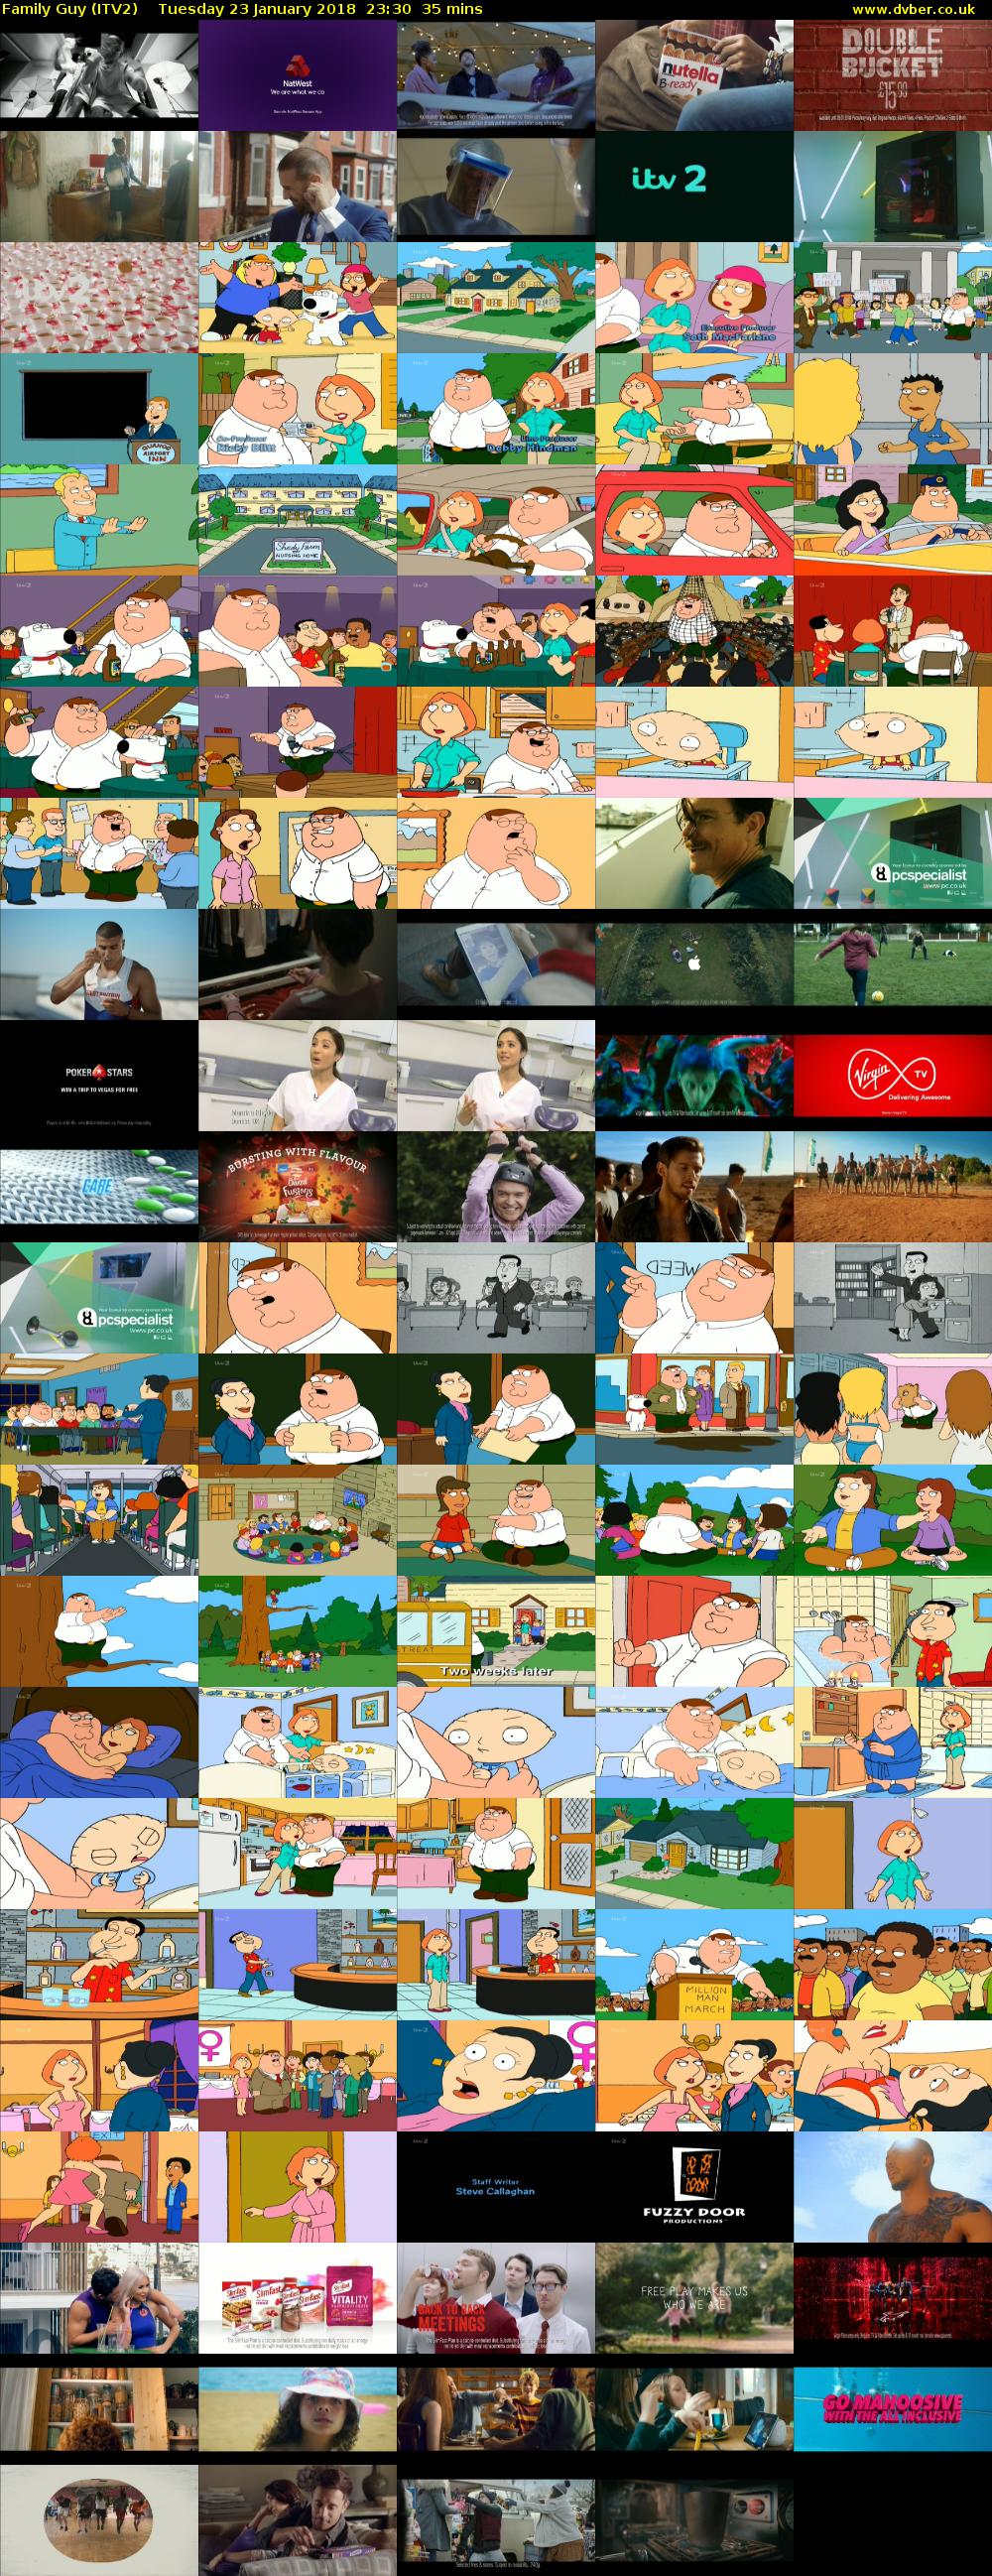 Family Guy (ITV2) Tuesday 23 January 2018 23:30 - 00:05